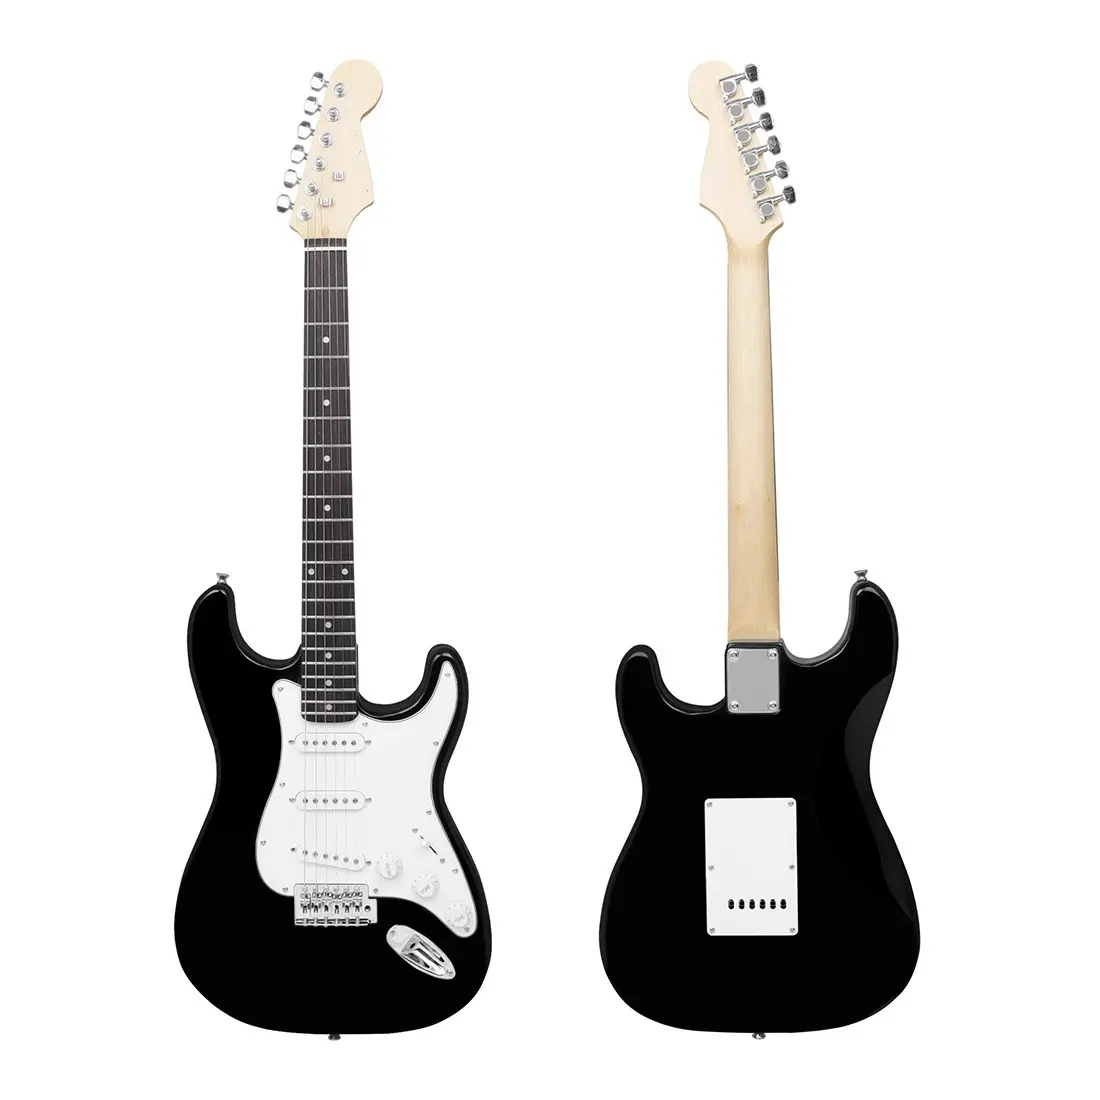 Fabrika toptan yüksek kaliteli elektrik gitar çatal gitar enstrüman satılık elektrikli gitarlar